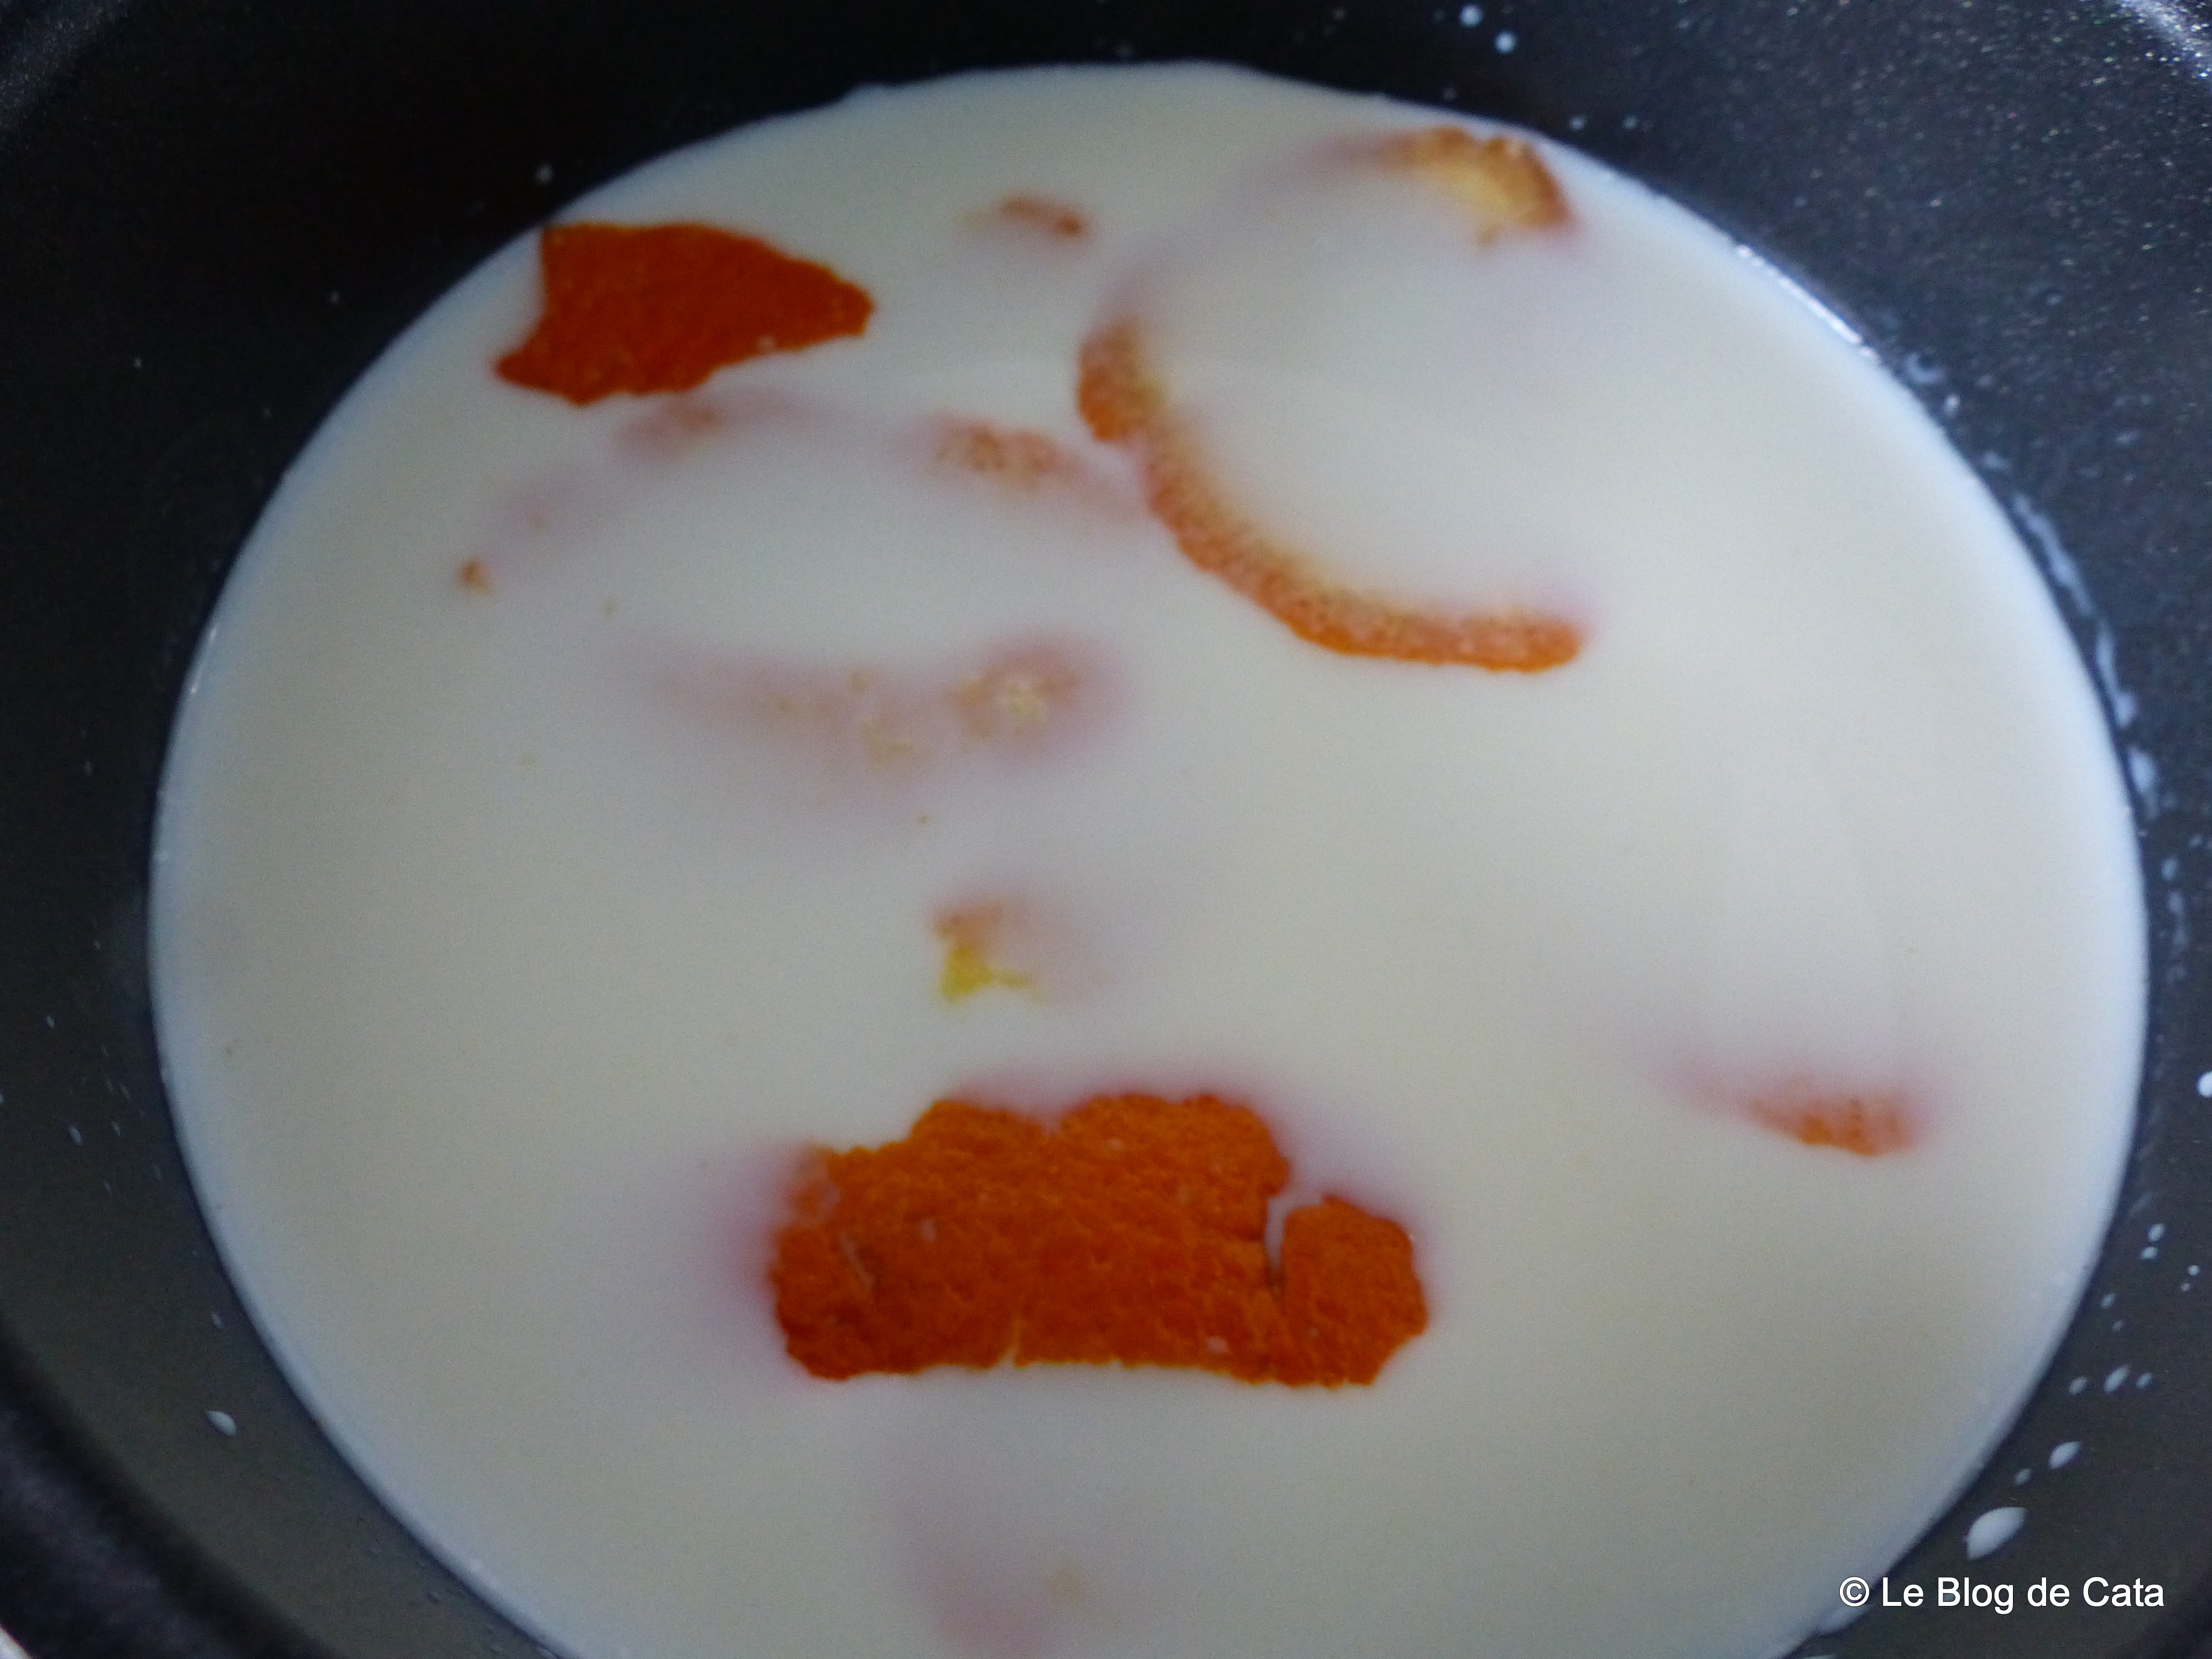 Crema de lapte - Paraguay (Crema de leche y maizena)